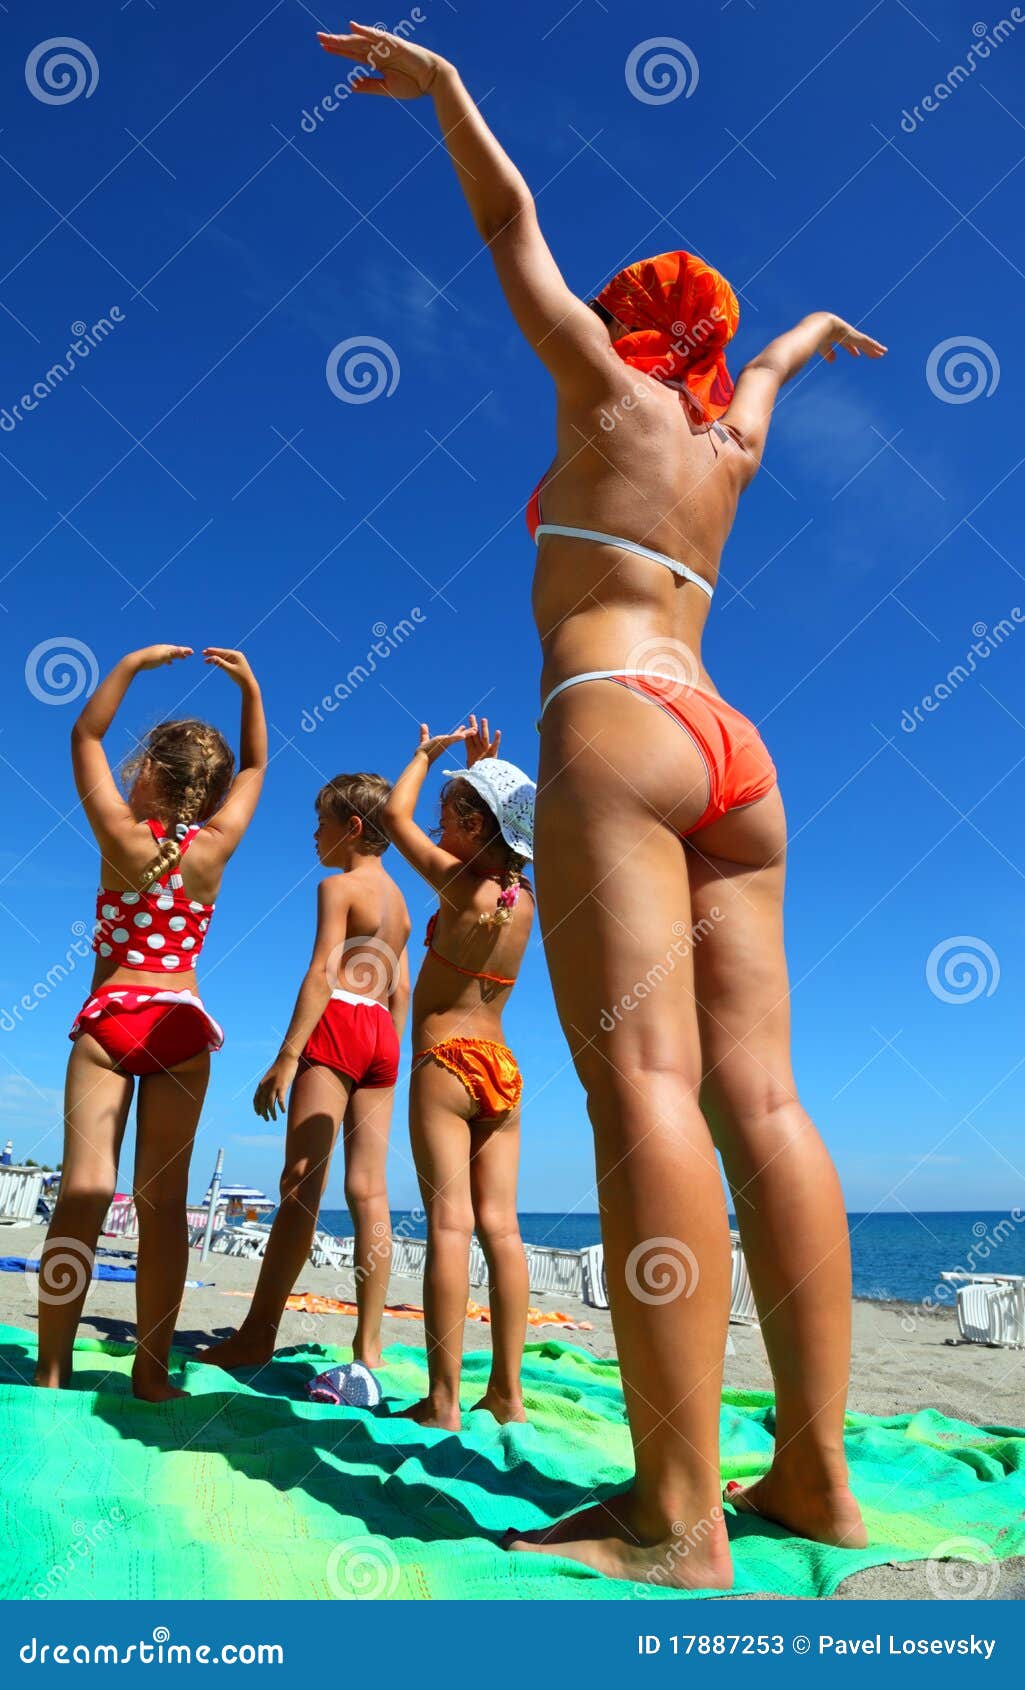 фото дети на голом пляже фото 70